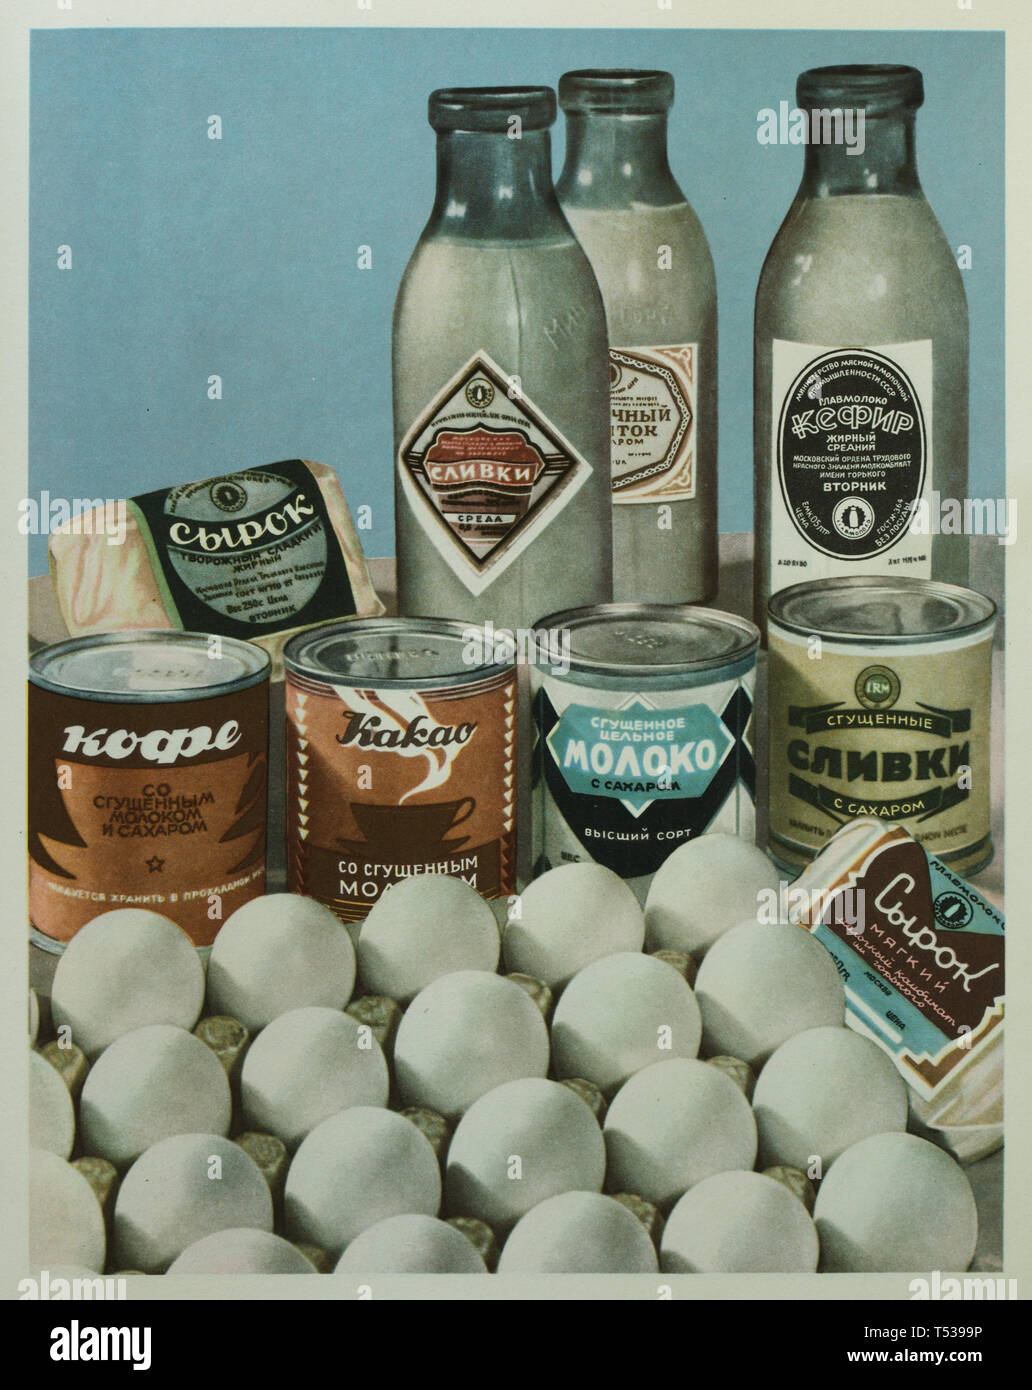 Diversos productos lácteos y huevos soviética representado en la ilustración a color en el libro de alimentos sanos y sabrosos publicado en la Unión Soviética (1953). Leche embotellada, agua embotellada kéfir y botellas de crema, crema condensada enlatados, las conservas de leche condensada con azúcar, conservas de café con leche condensada y conservas de chocolate con leche condensada, así como aperitivos syrok (Federación de cuajada) se ve en la imagen. Foto de stock